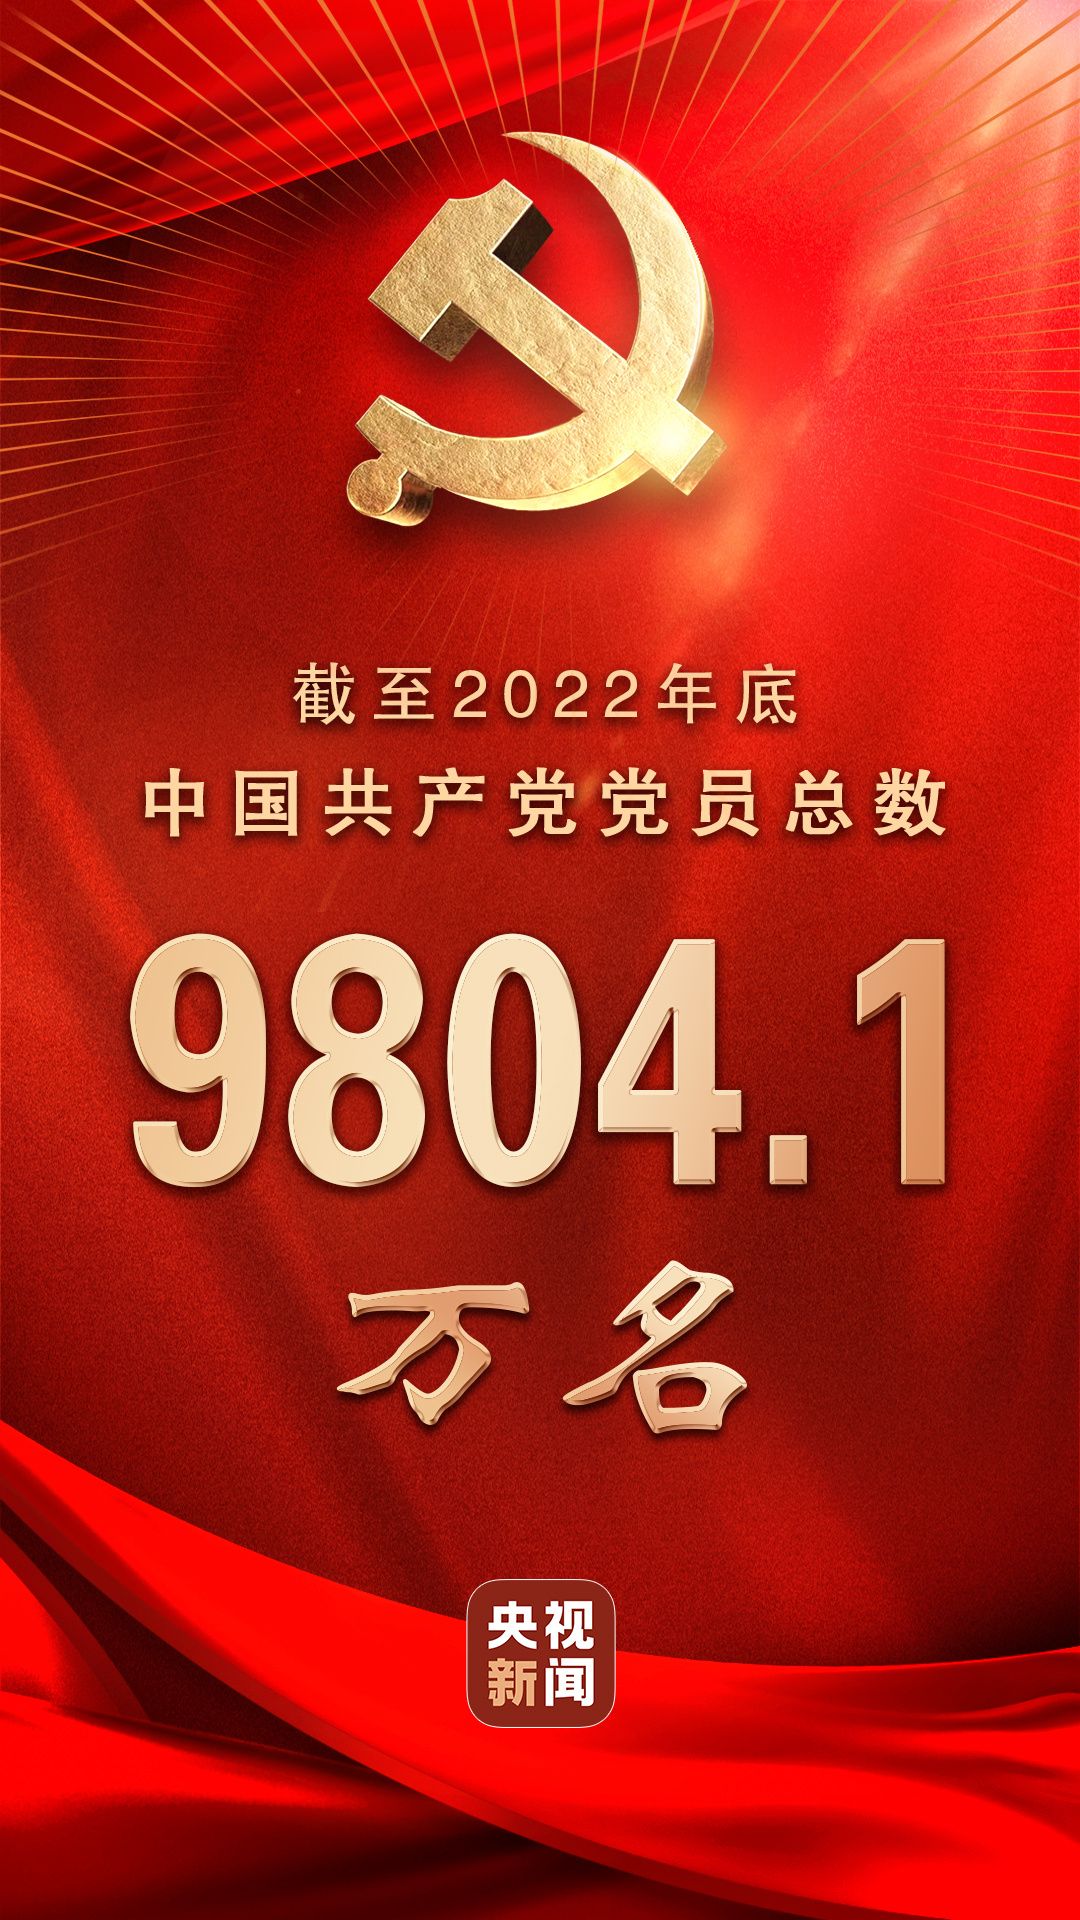 中国共产党党员总数达9804.1万名